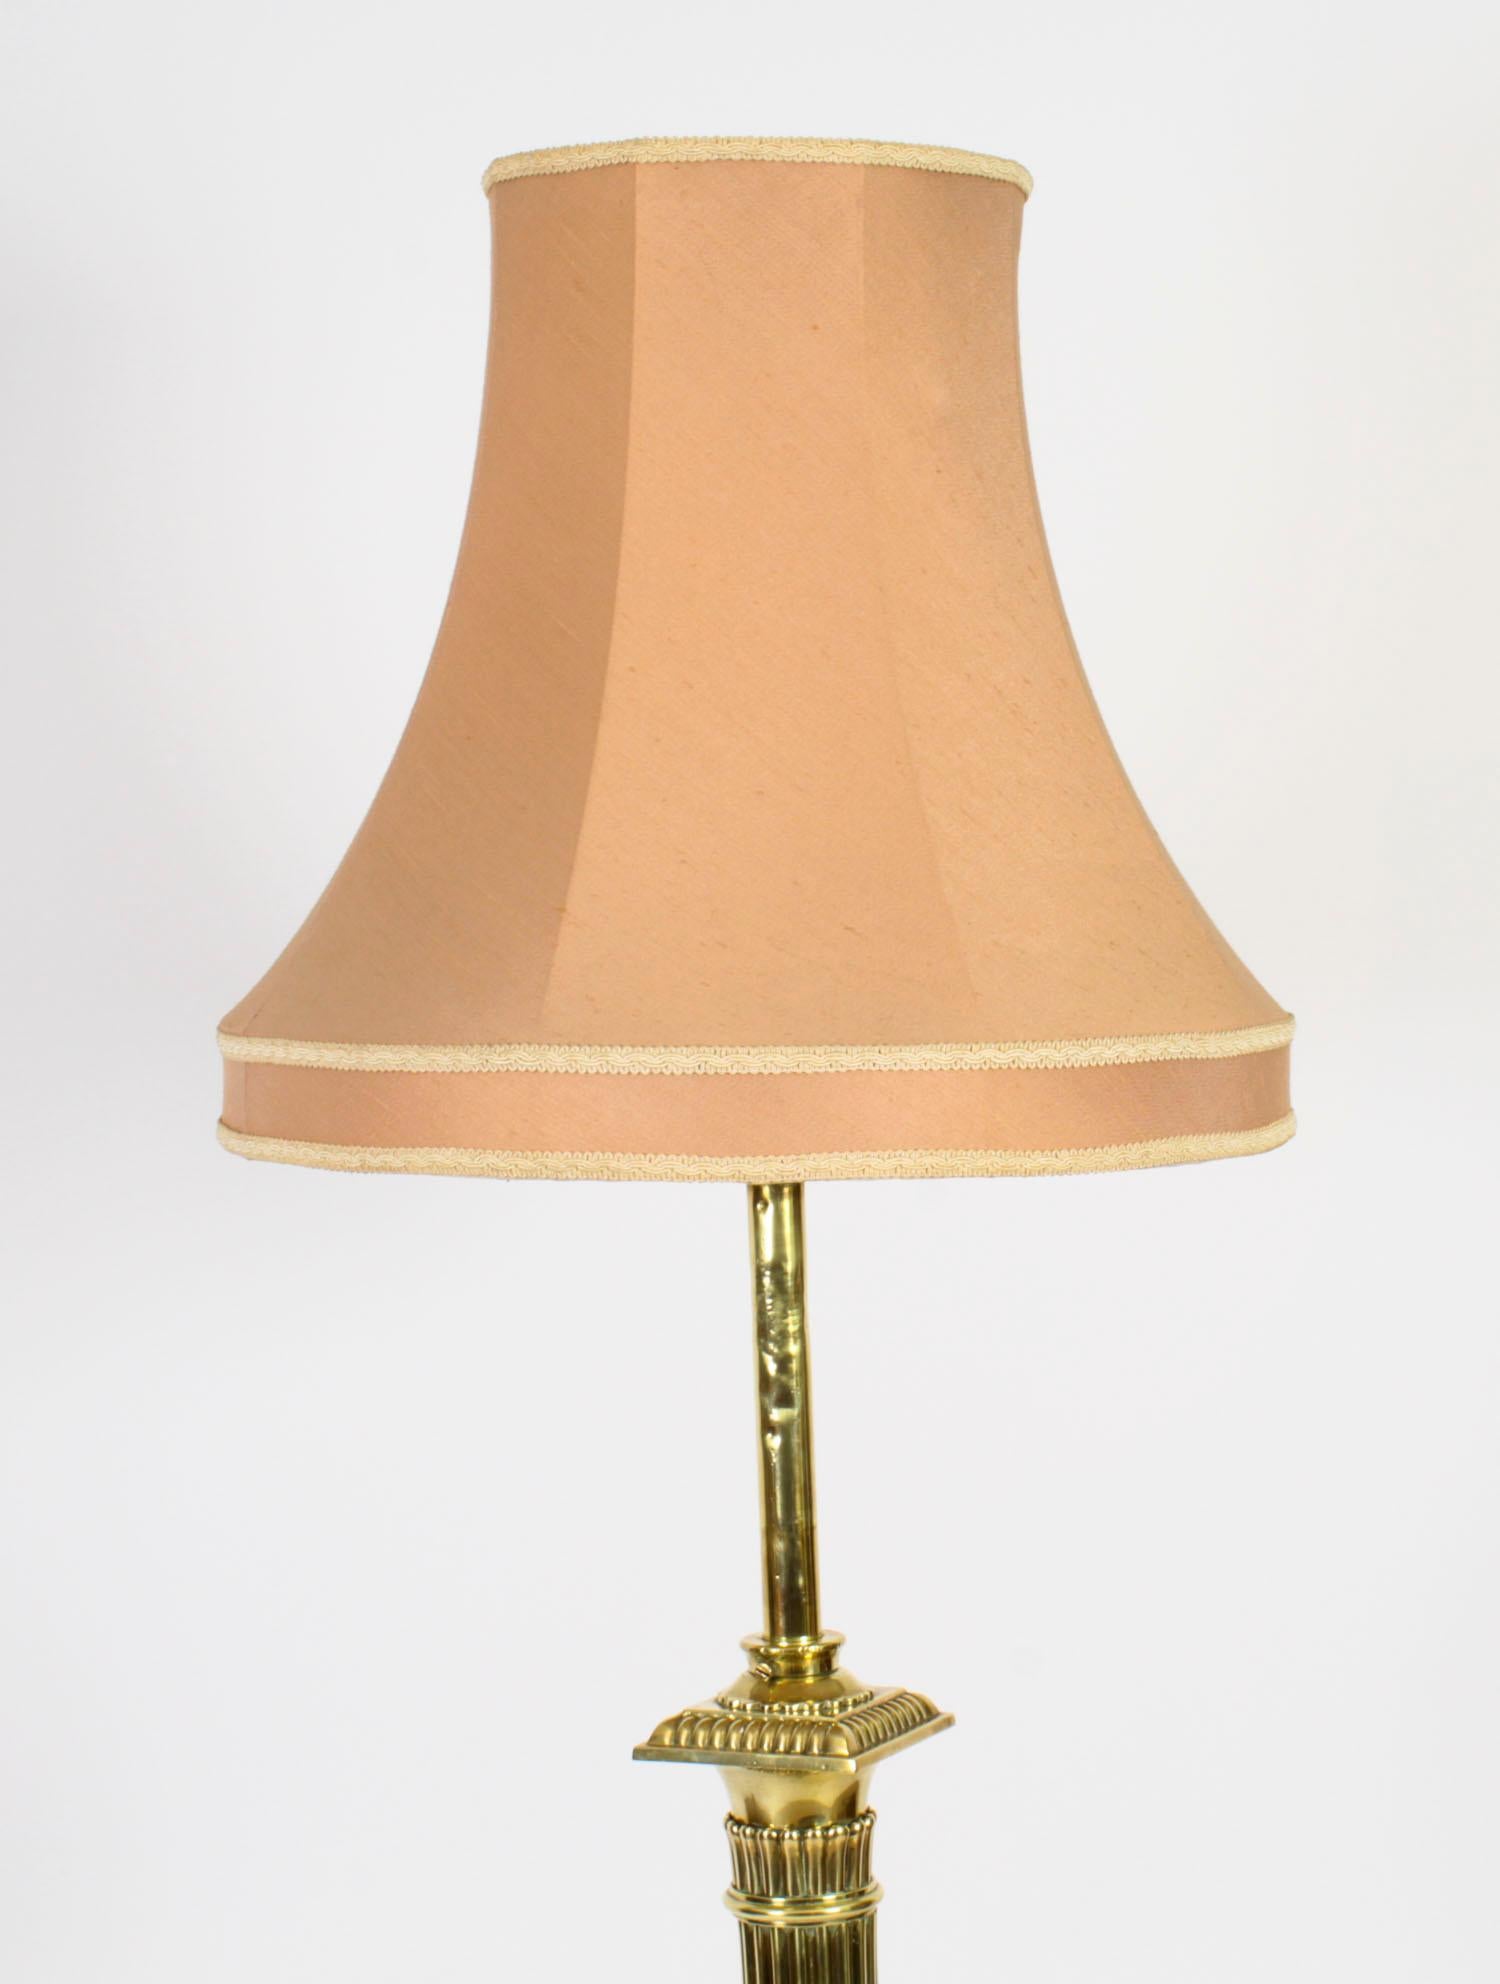 Il s'agit d'un très beau lampadaire télescopique victorien ancien à colonne corinthienne en laiton, de qualité exposition, aujourd'hui converti à l'électricité, datant d'environ 1890.

Cette lampe splendide présente un chapiteau corinthien distingué